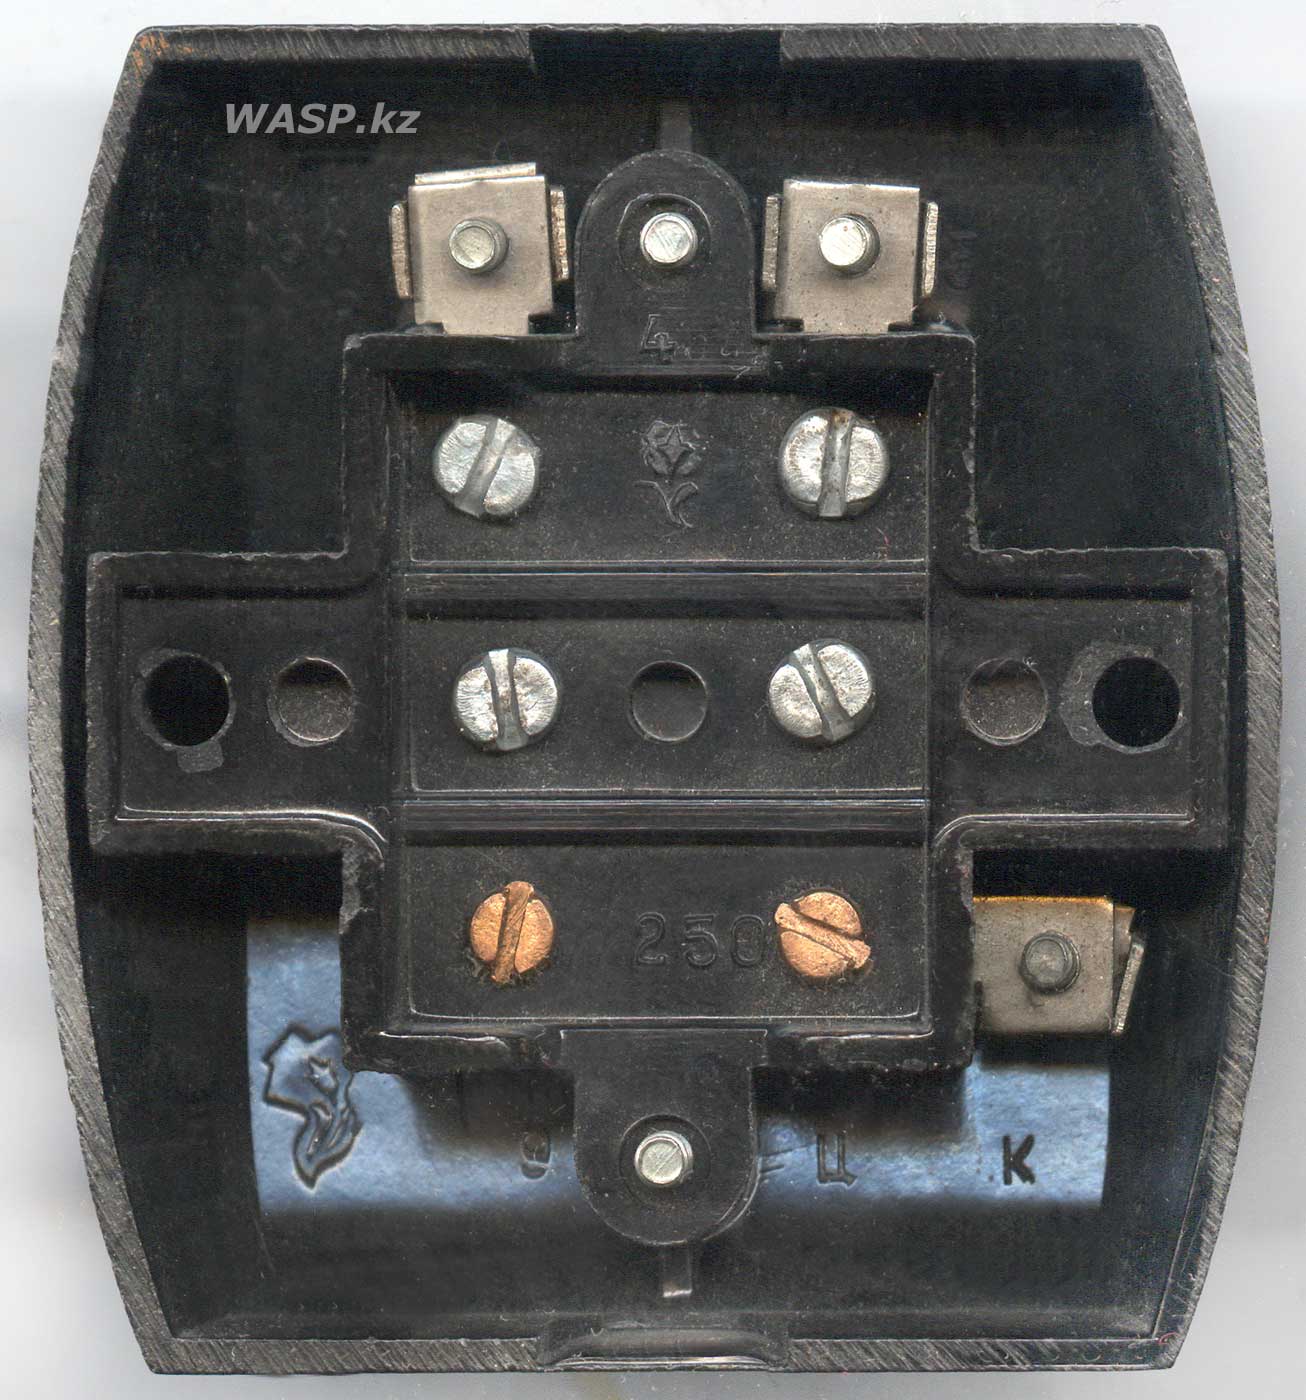 клавишный выключатель бытовой, СССР, сделано в Алма-Ате